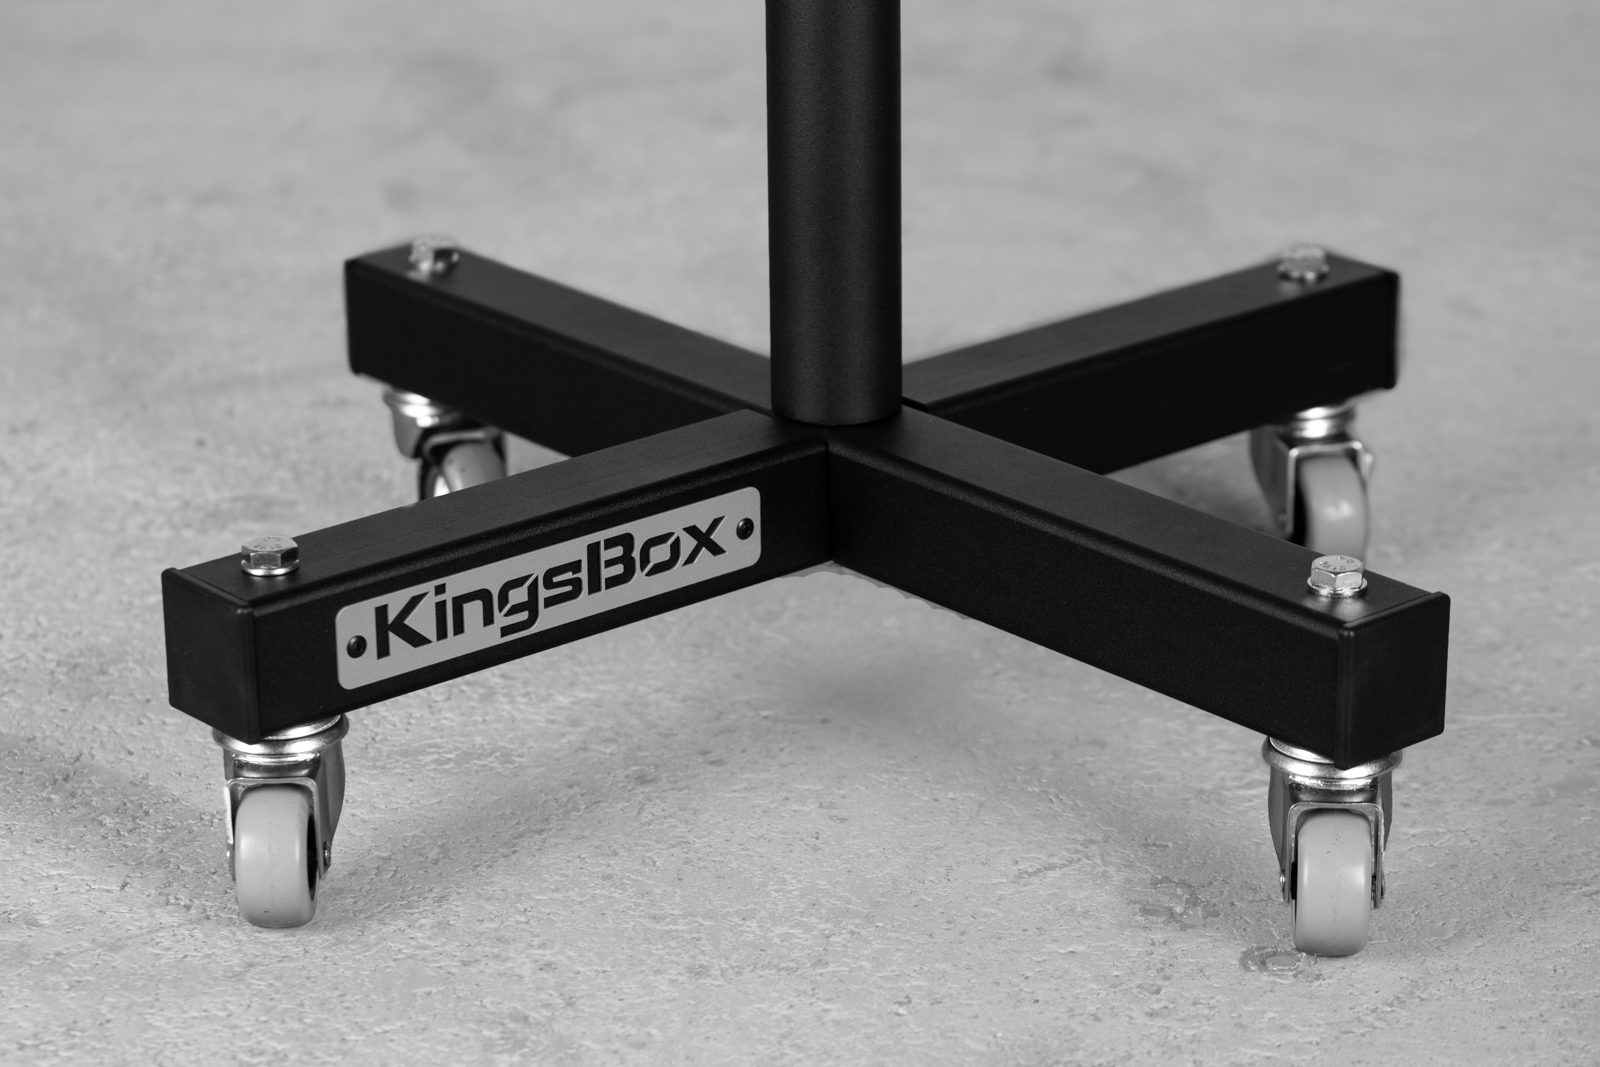 KingsBox Tower Weight Rack | KingsBox